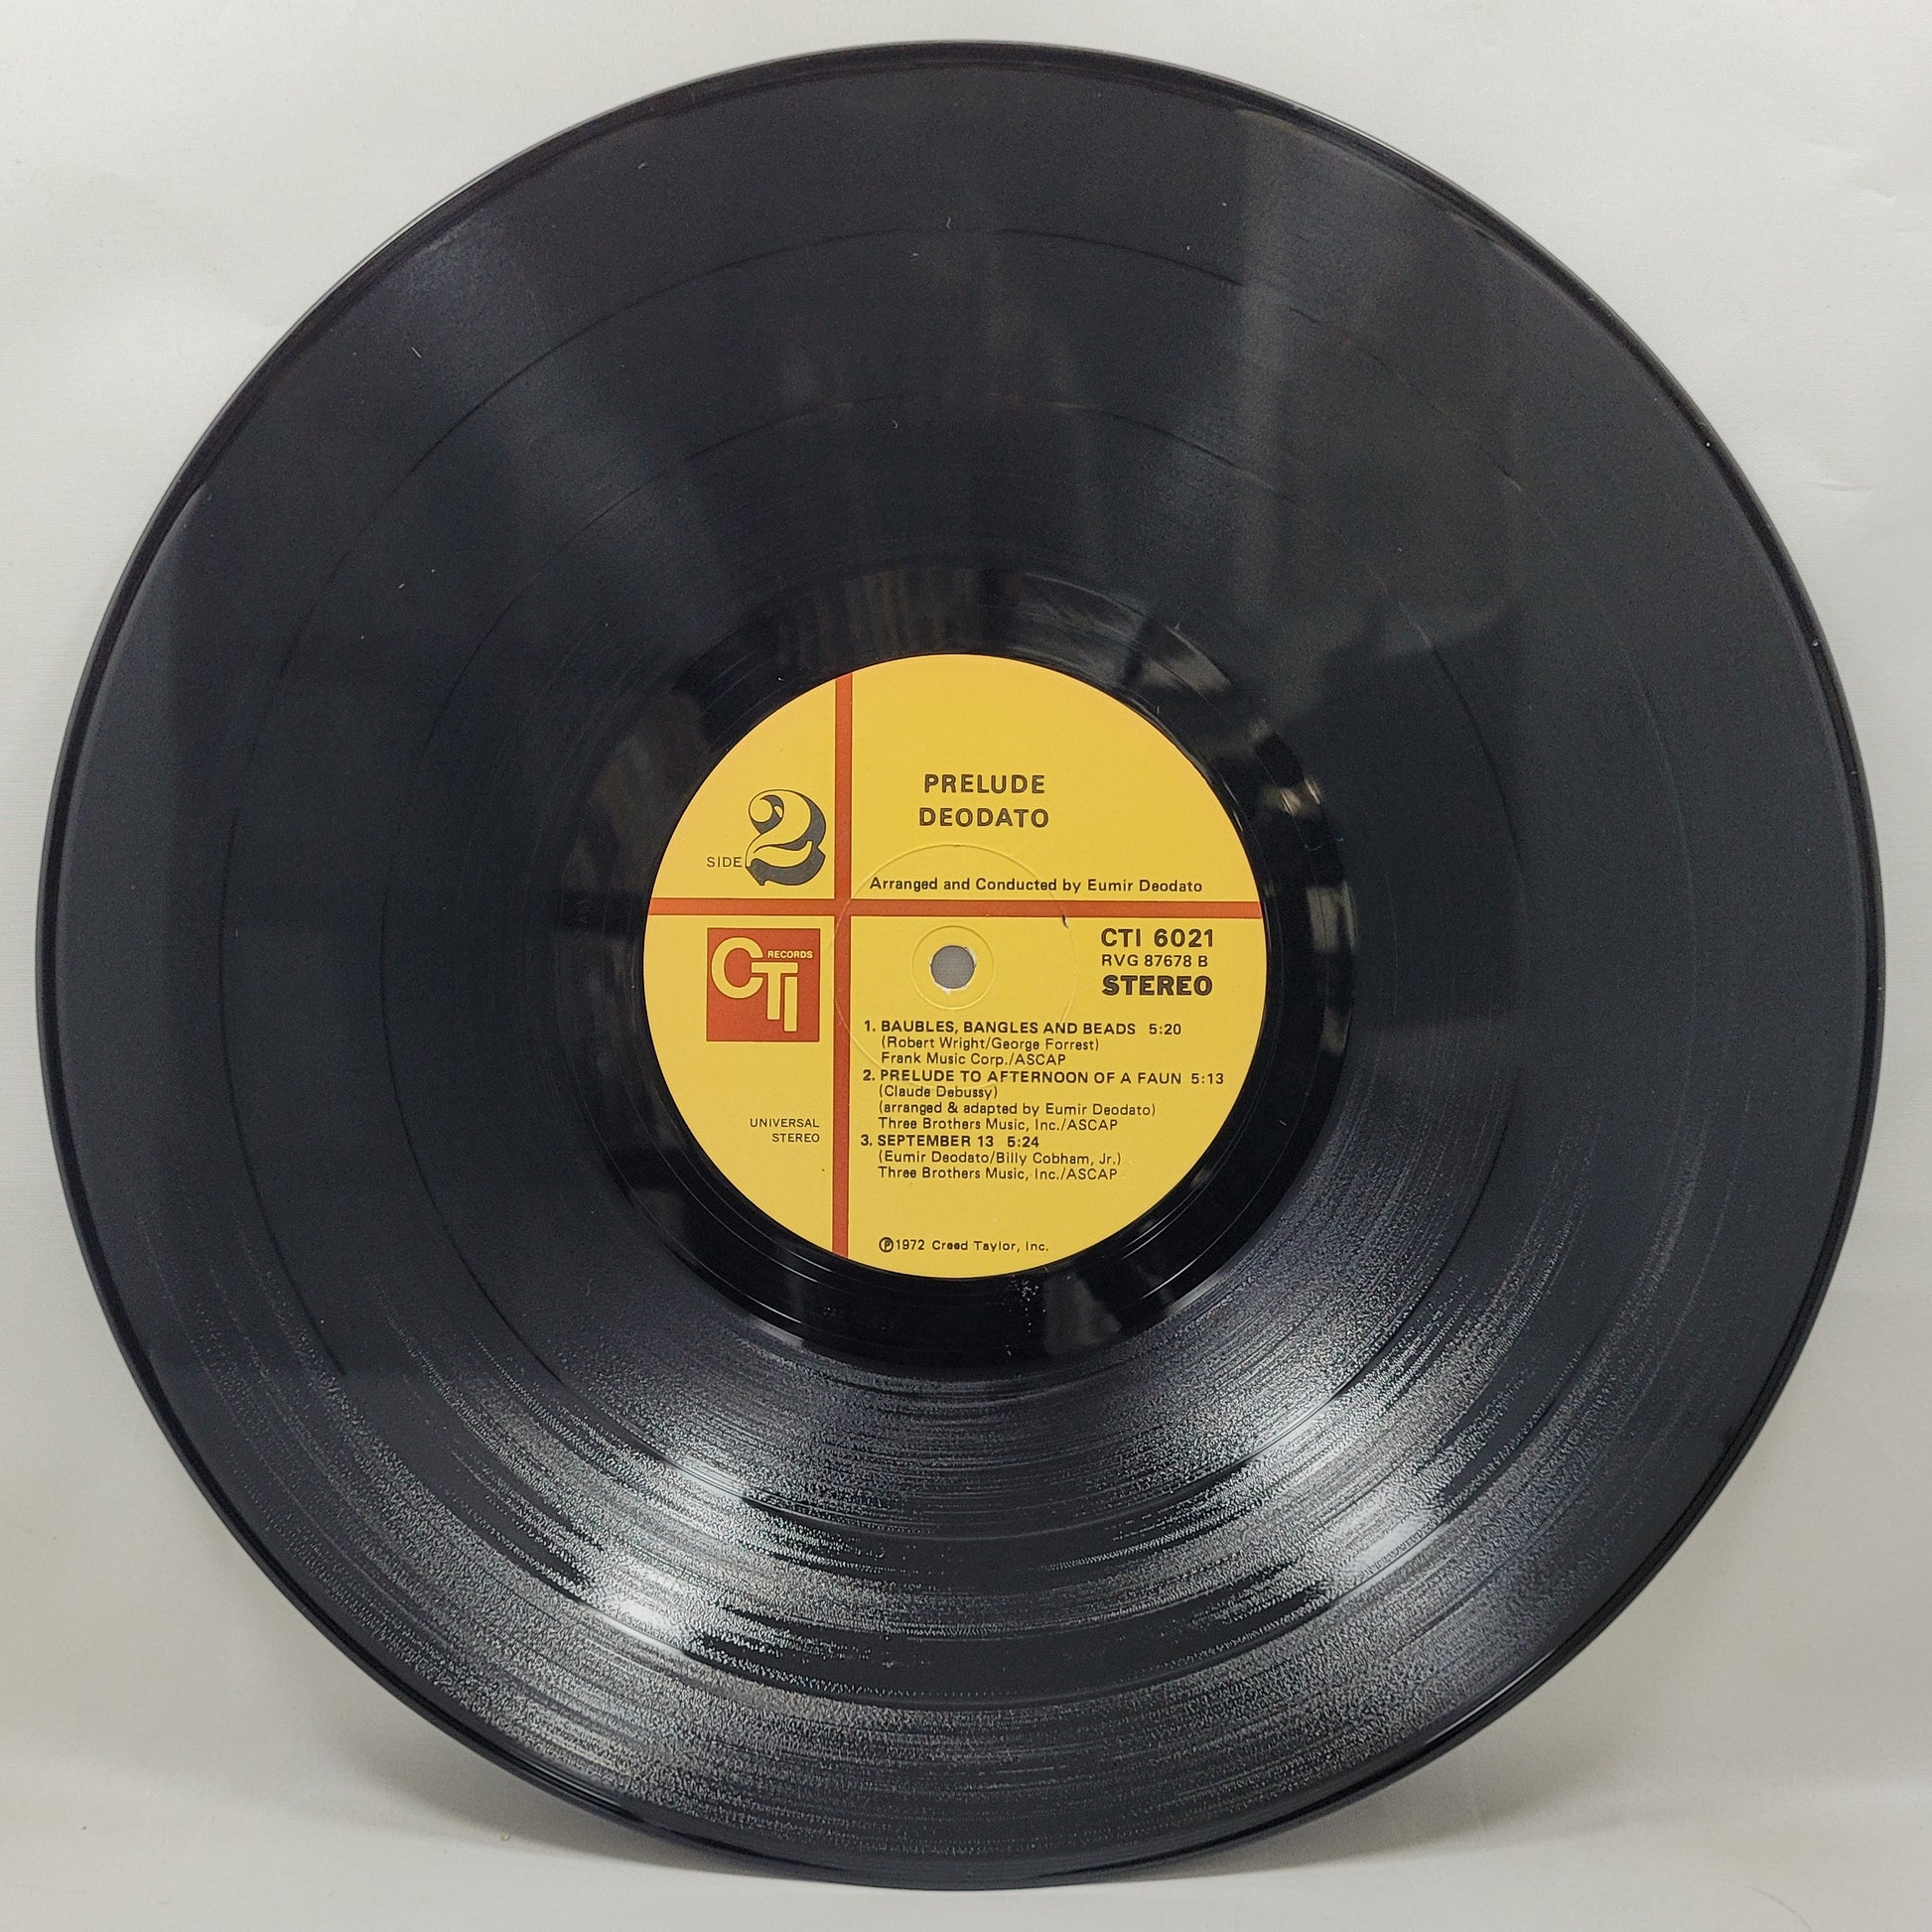 Deodato - Prelude [1973 Used Vinyl Record LP]